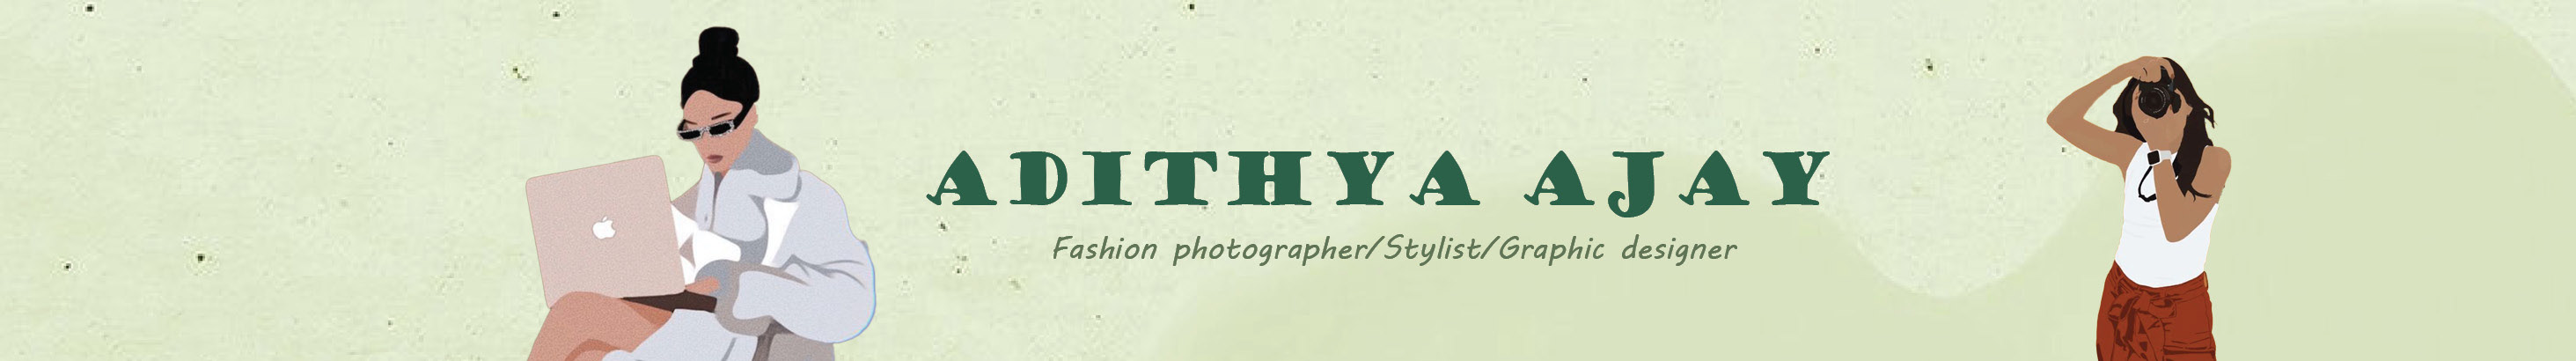 Adithya Ajay profil başlığı